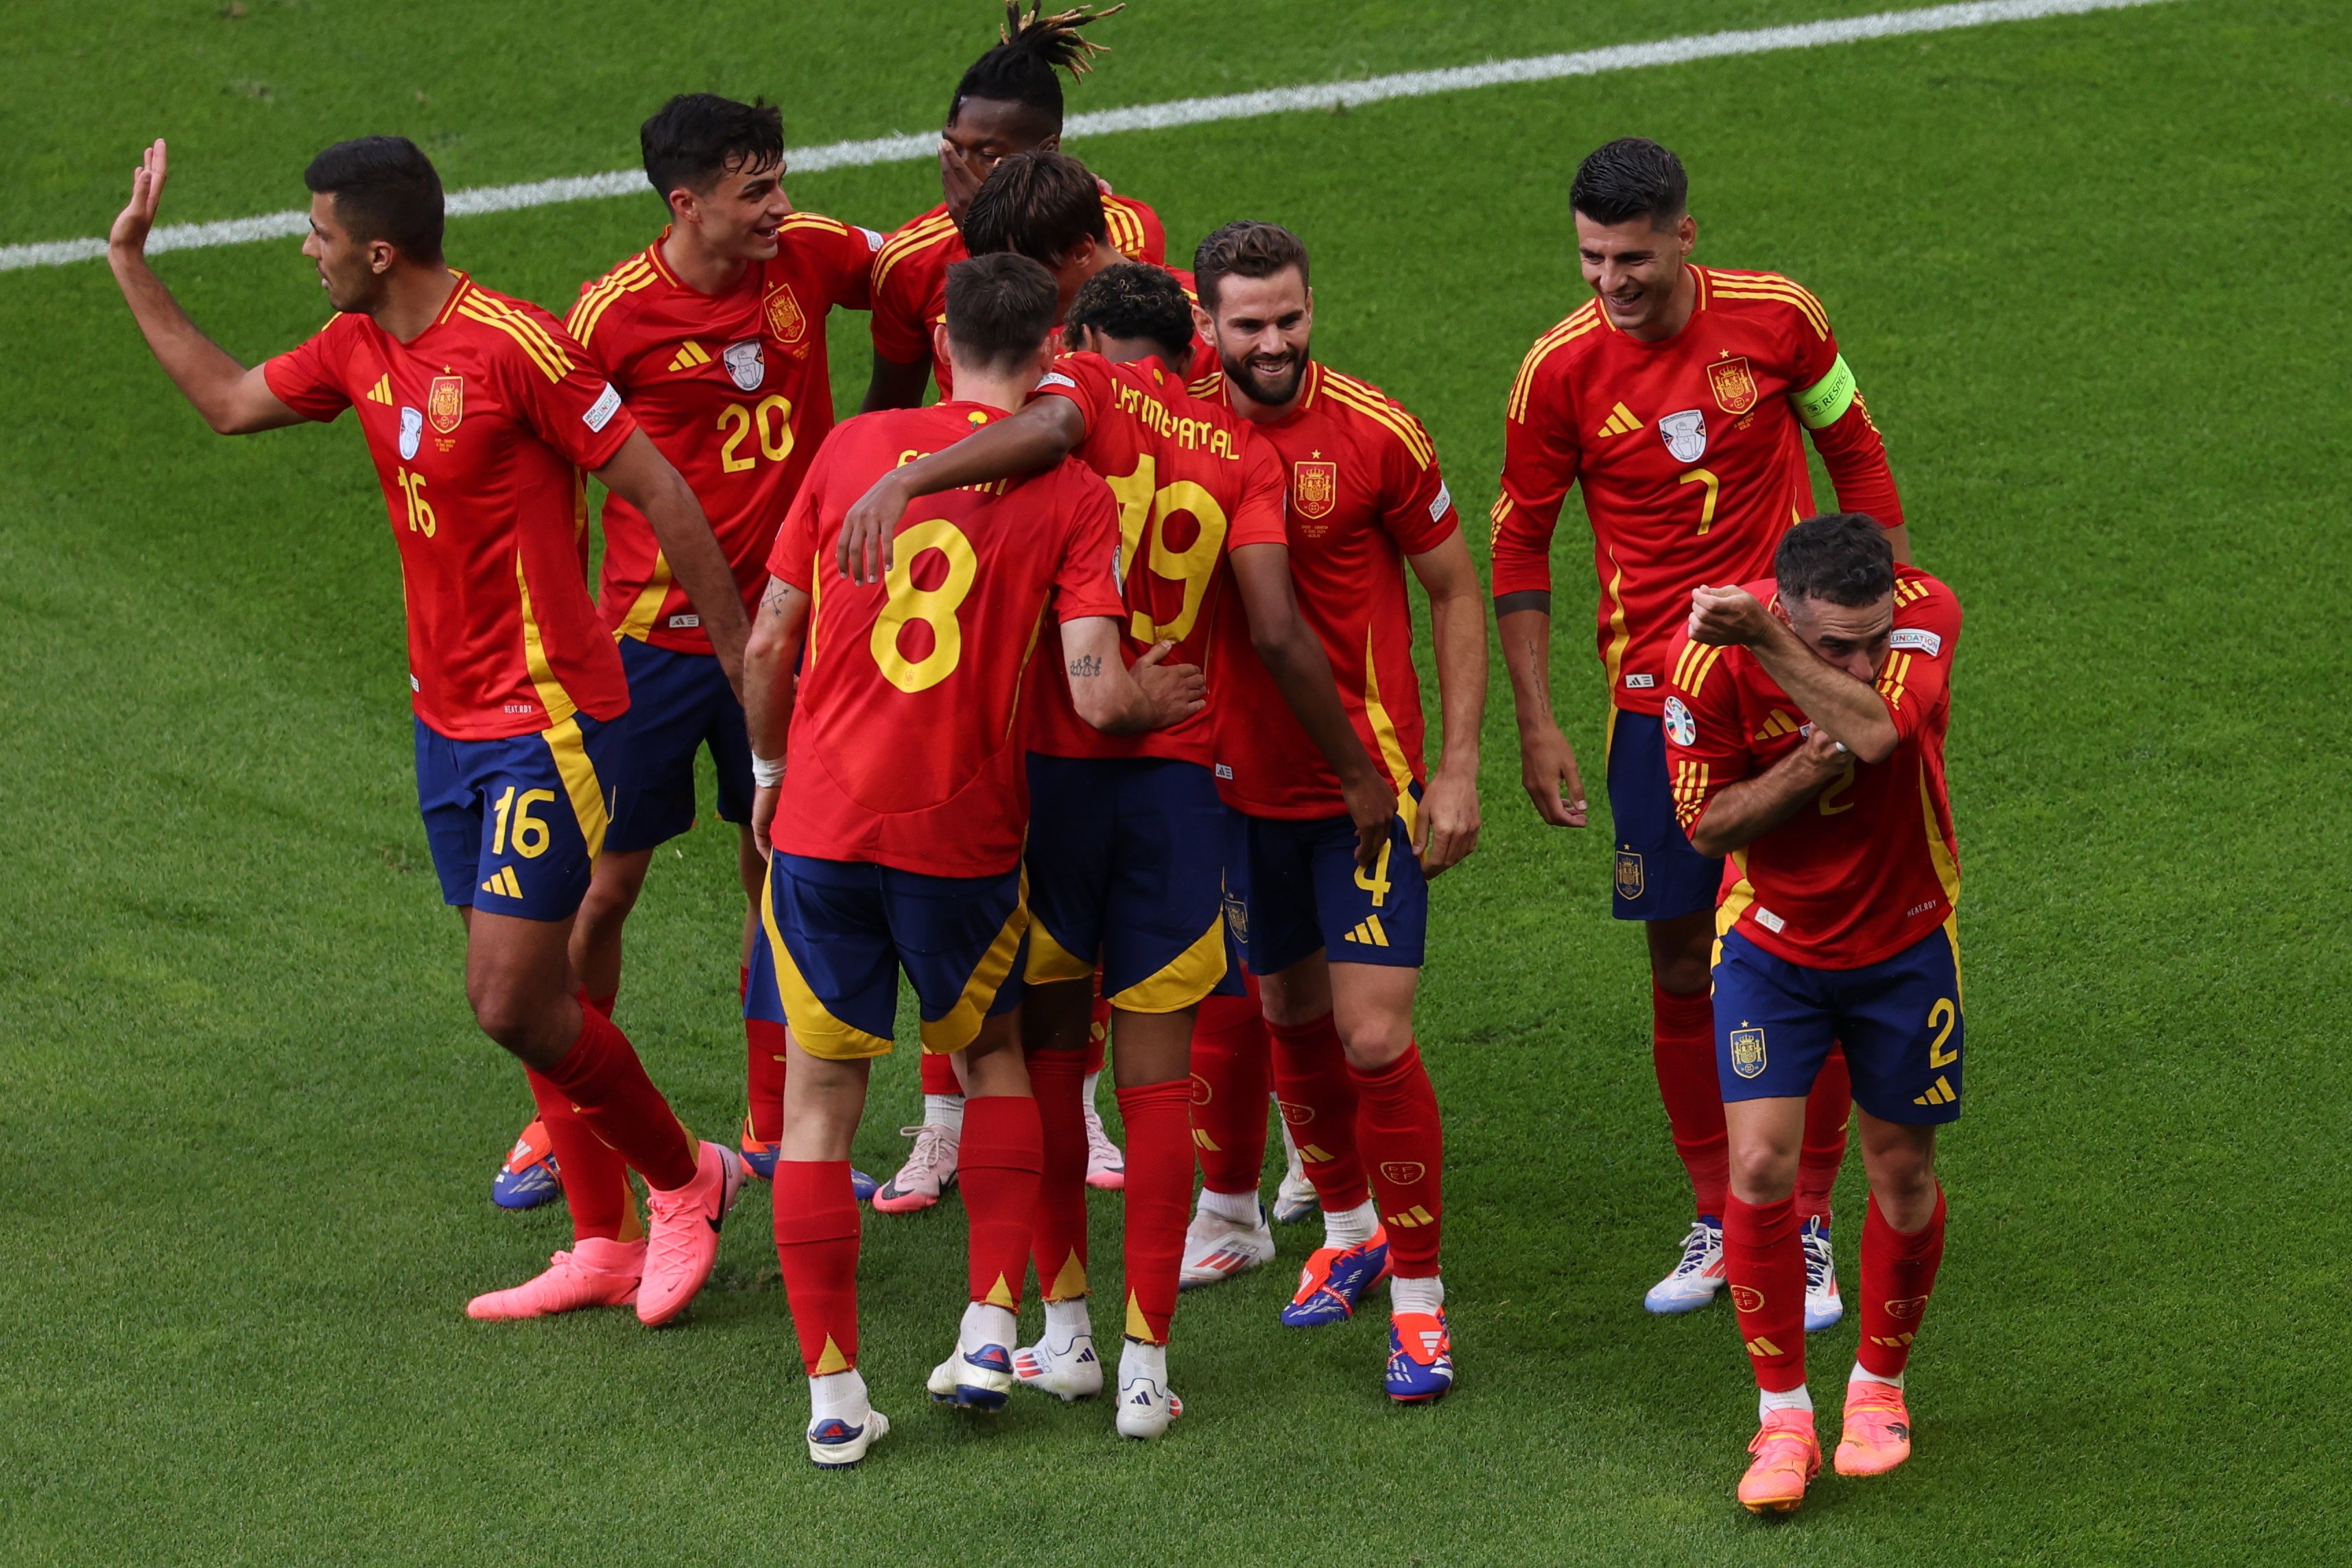 Dani Carvajal celebrates scoring for Spain